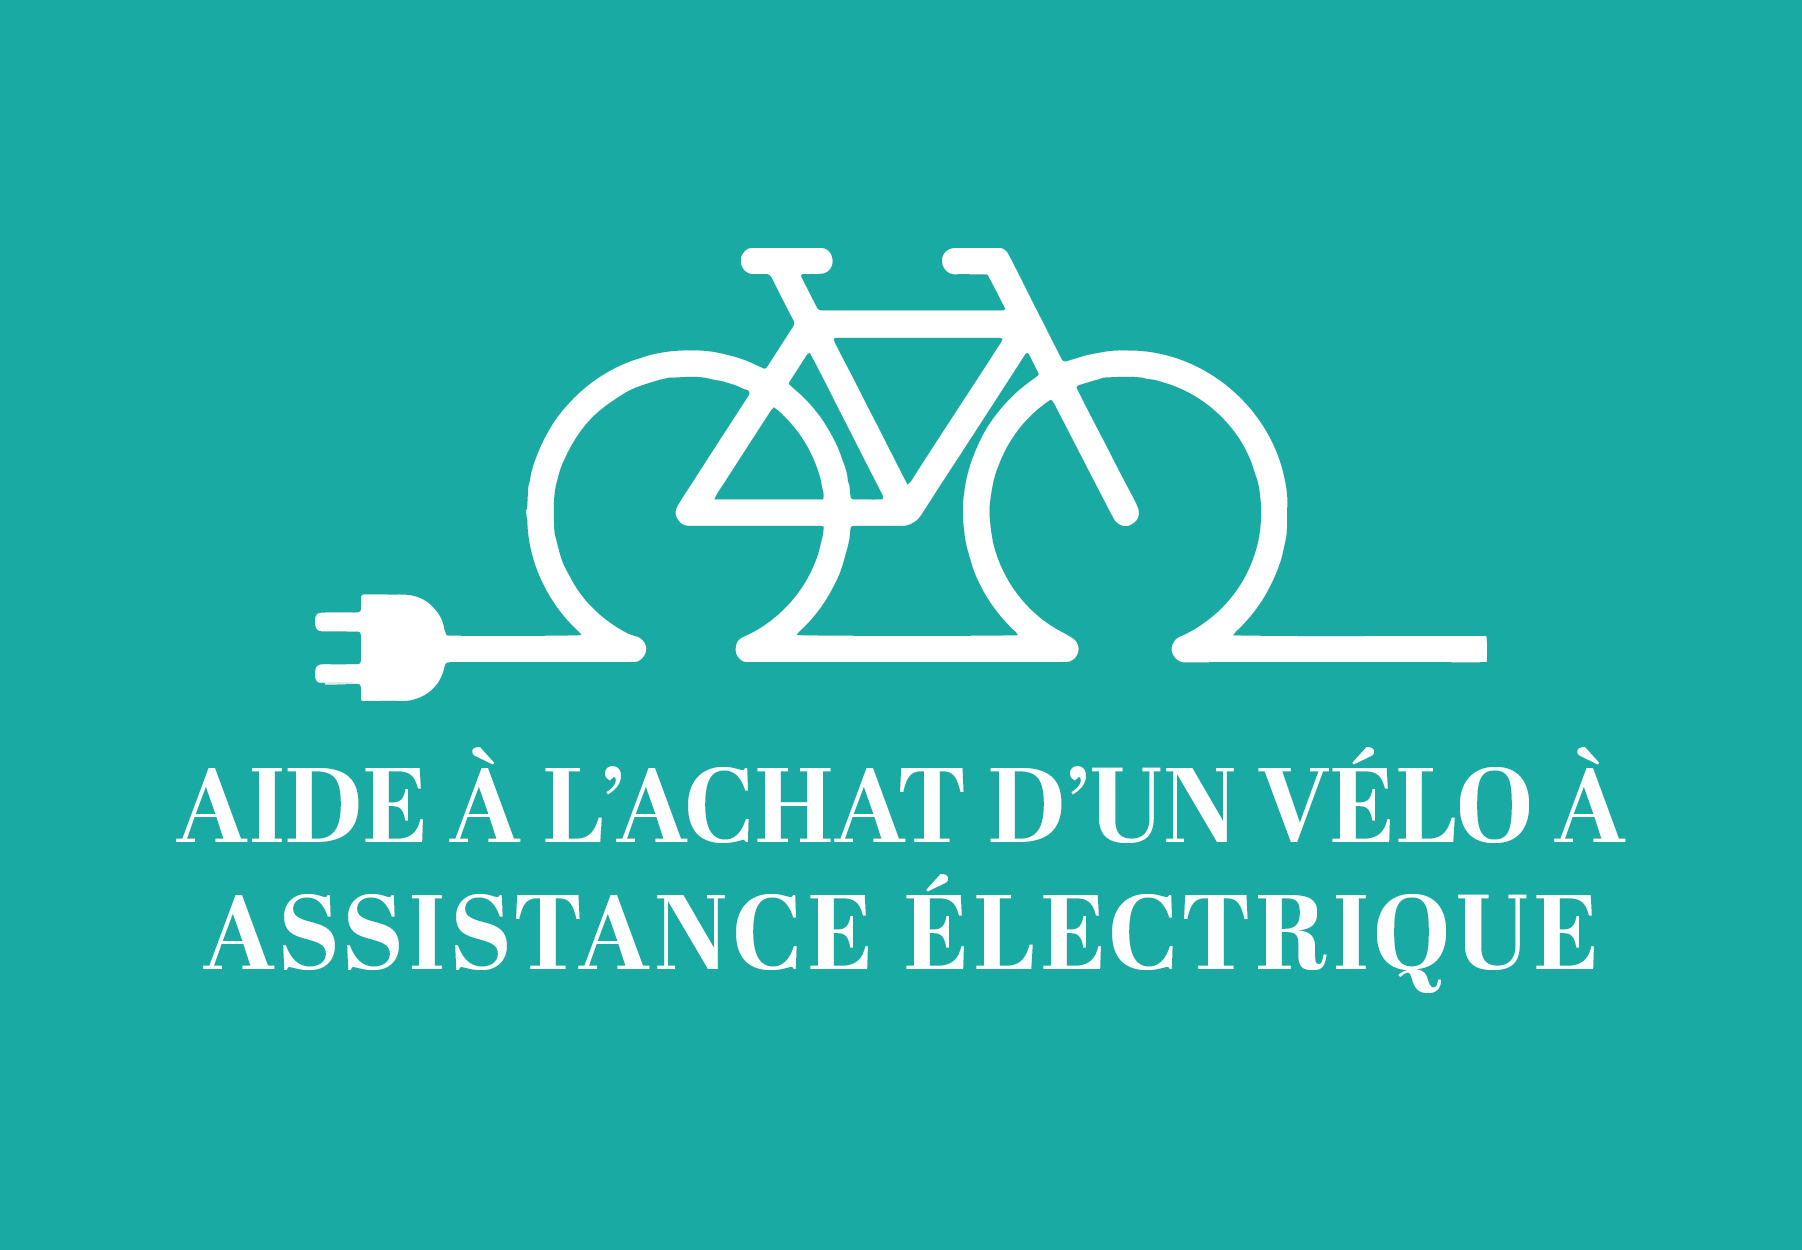 Une aide de 200€ pour l’achat d’un vélo électrique